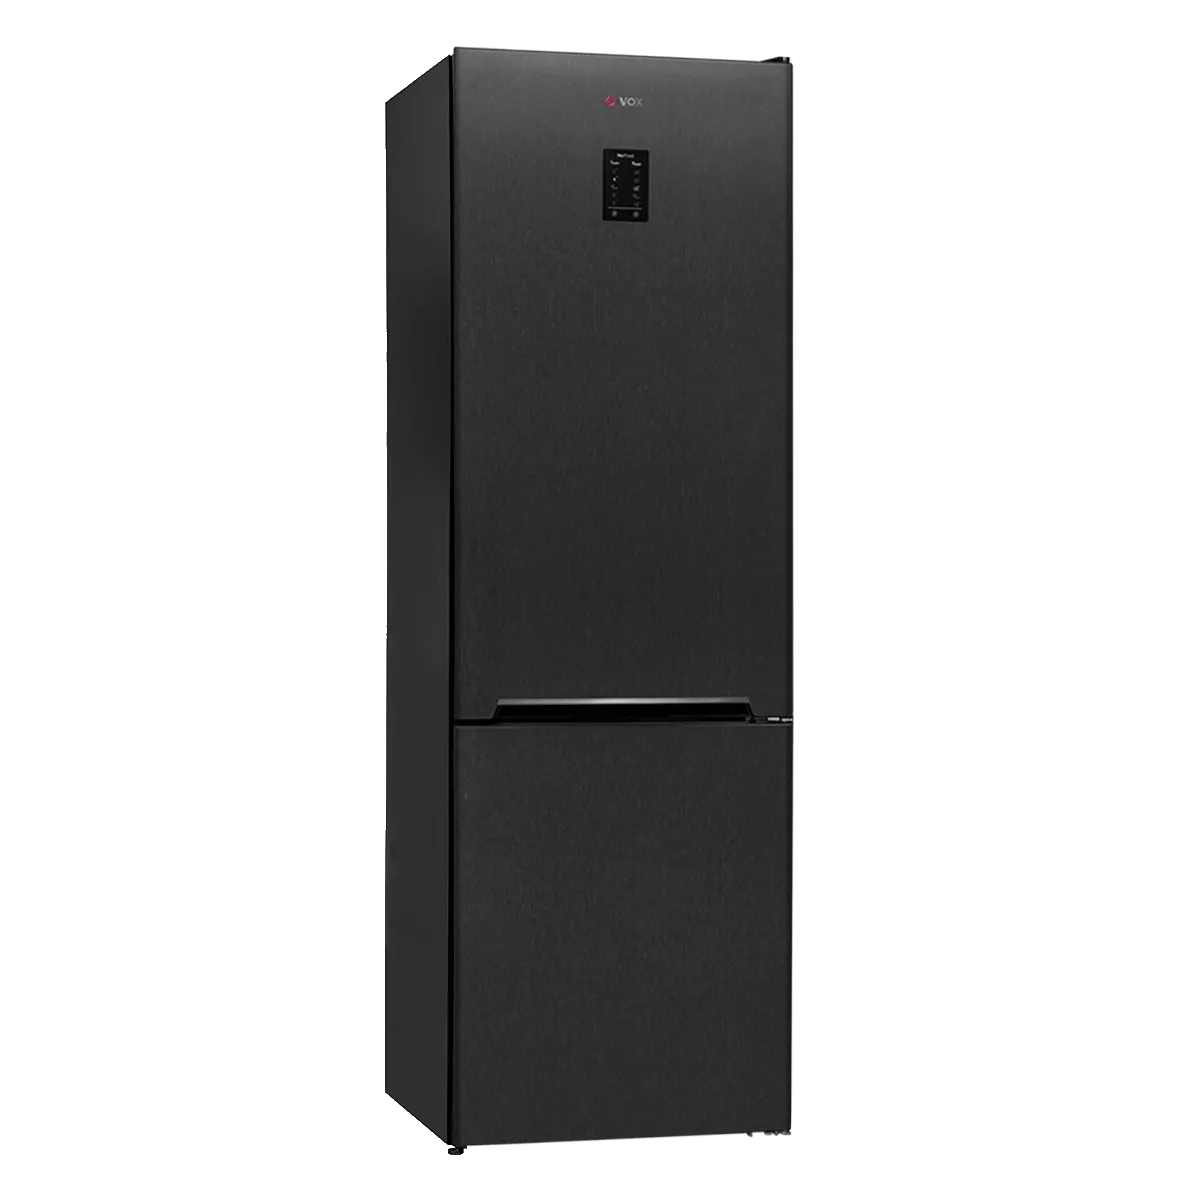 Комбиниран фрижидер NF 3833 AE 